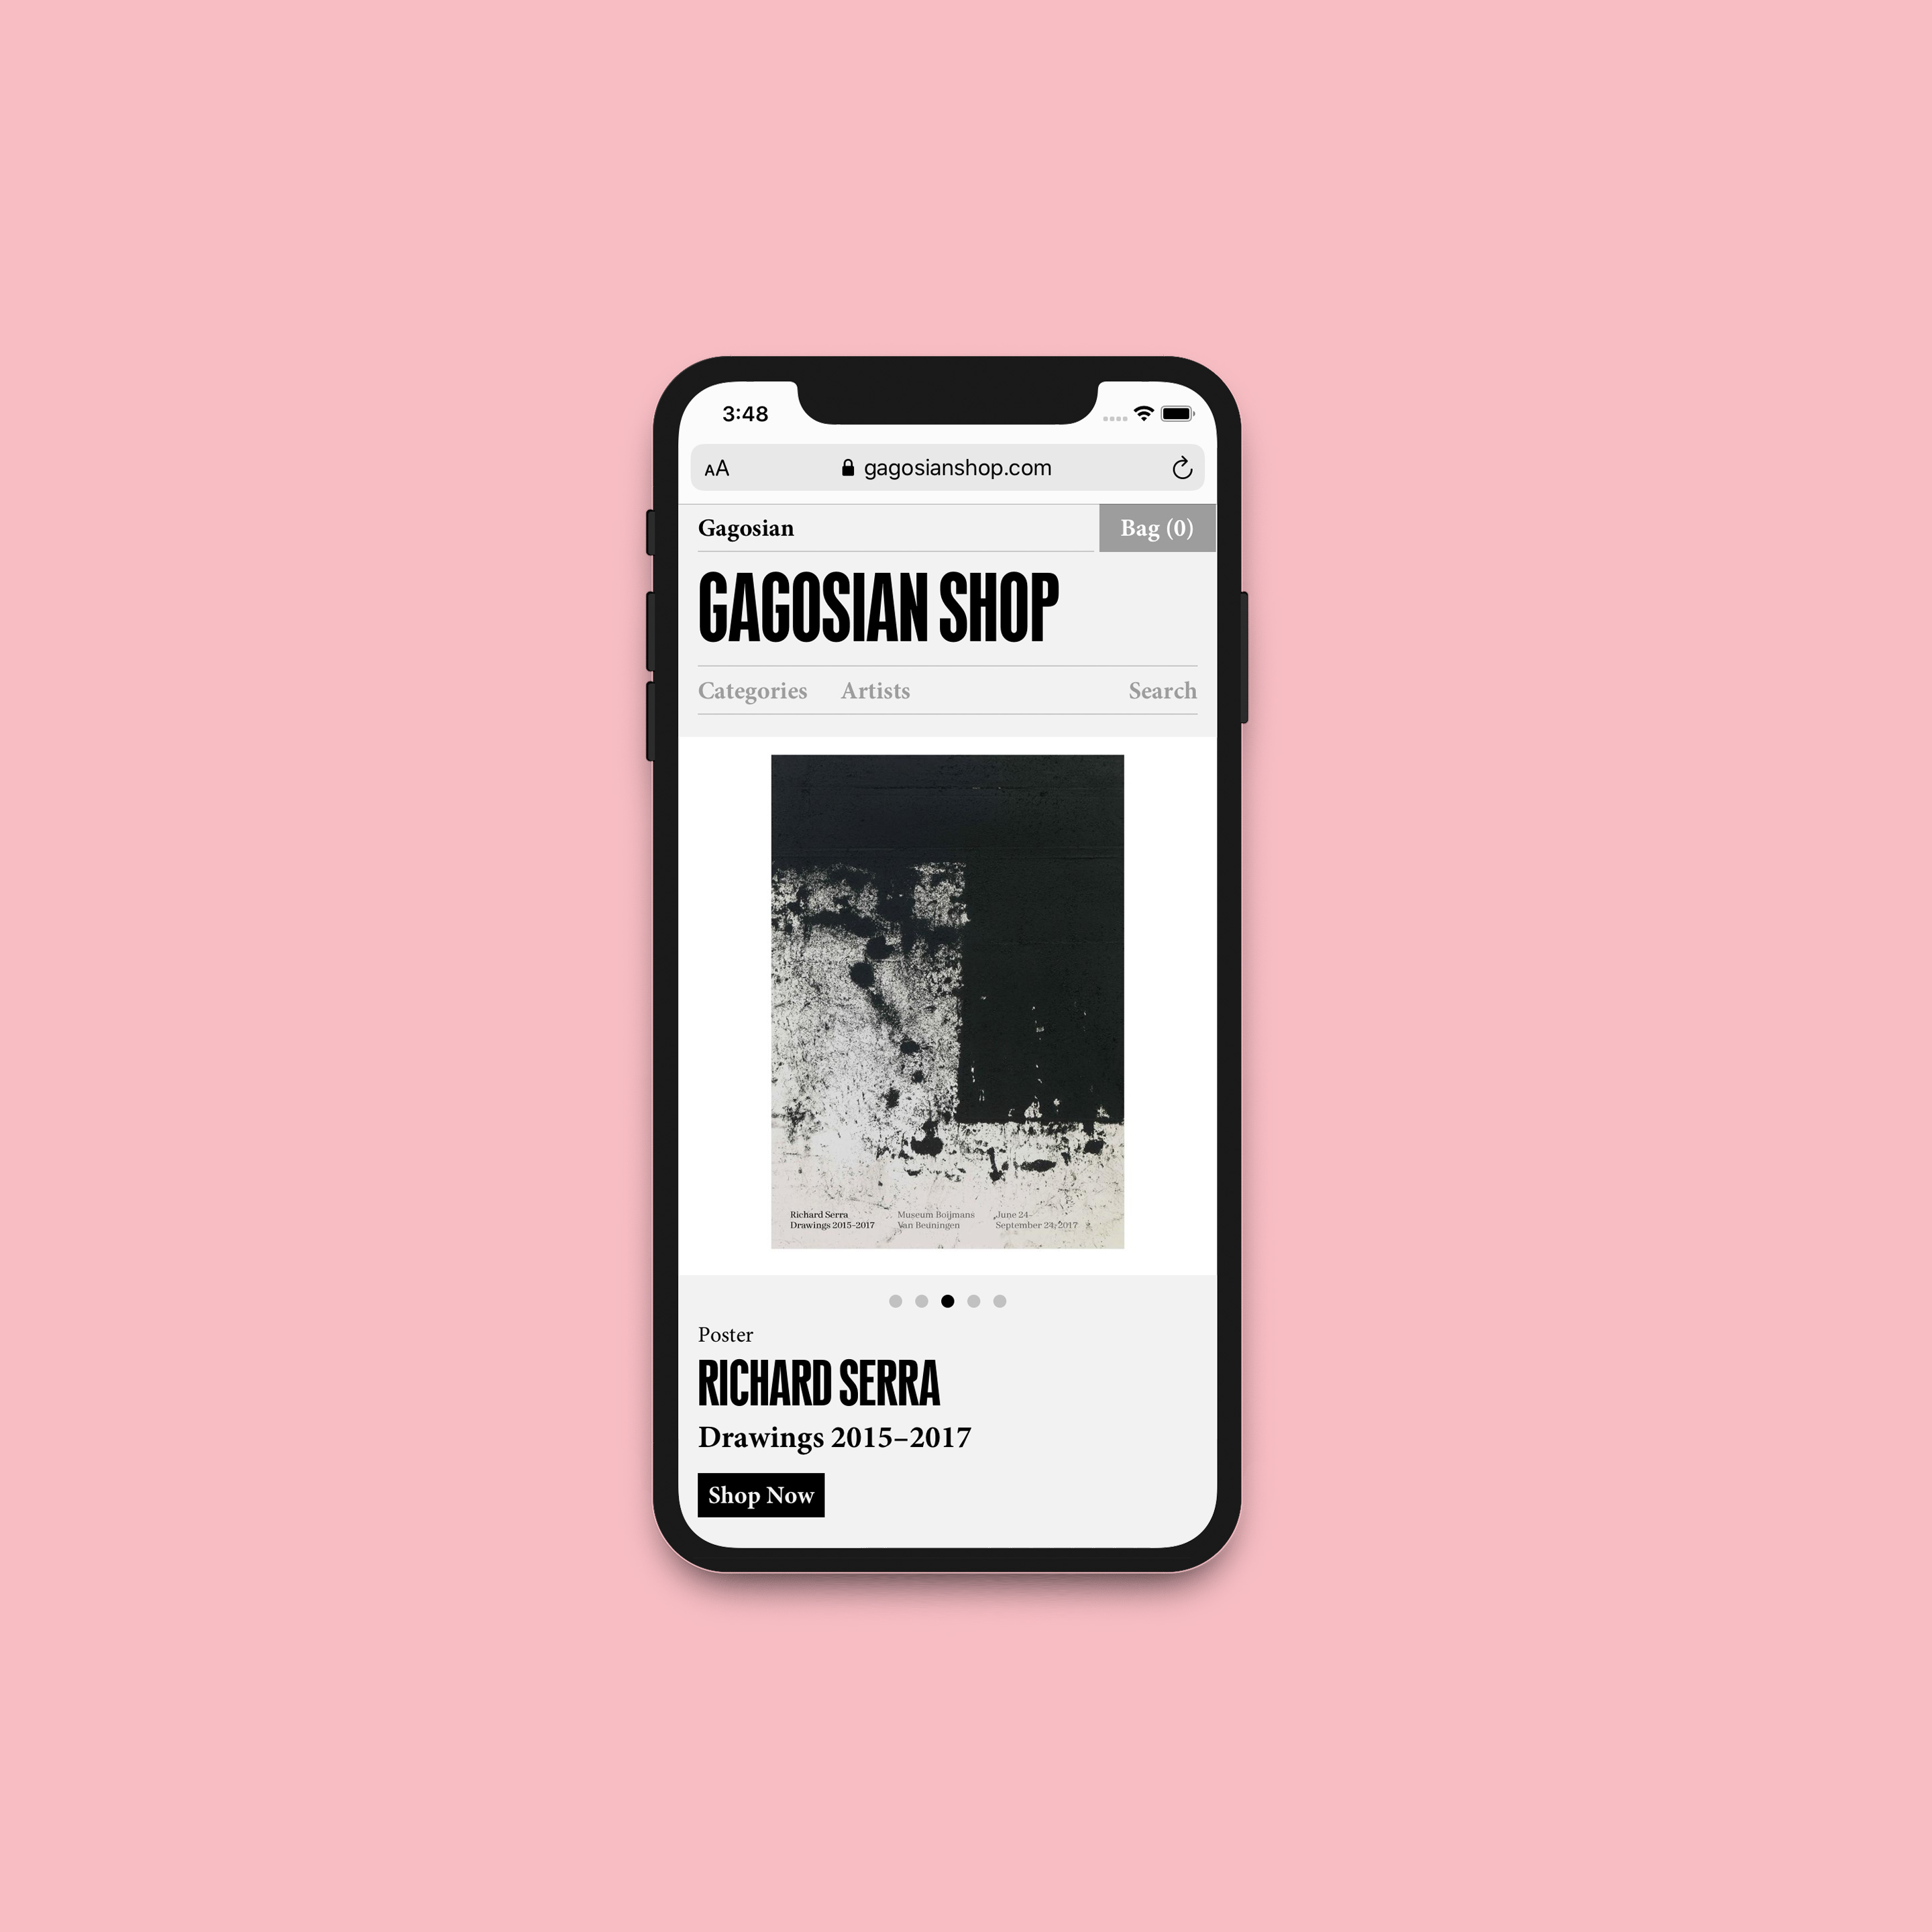 A screenshot of the Gagosian Shop website